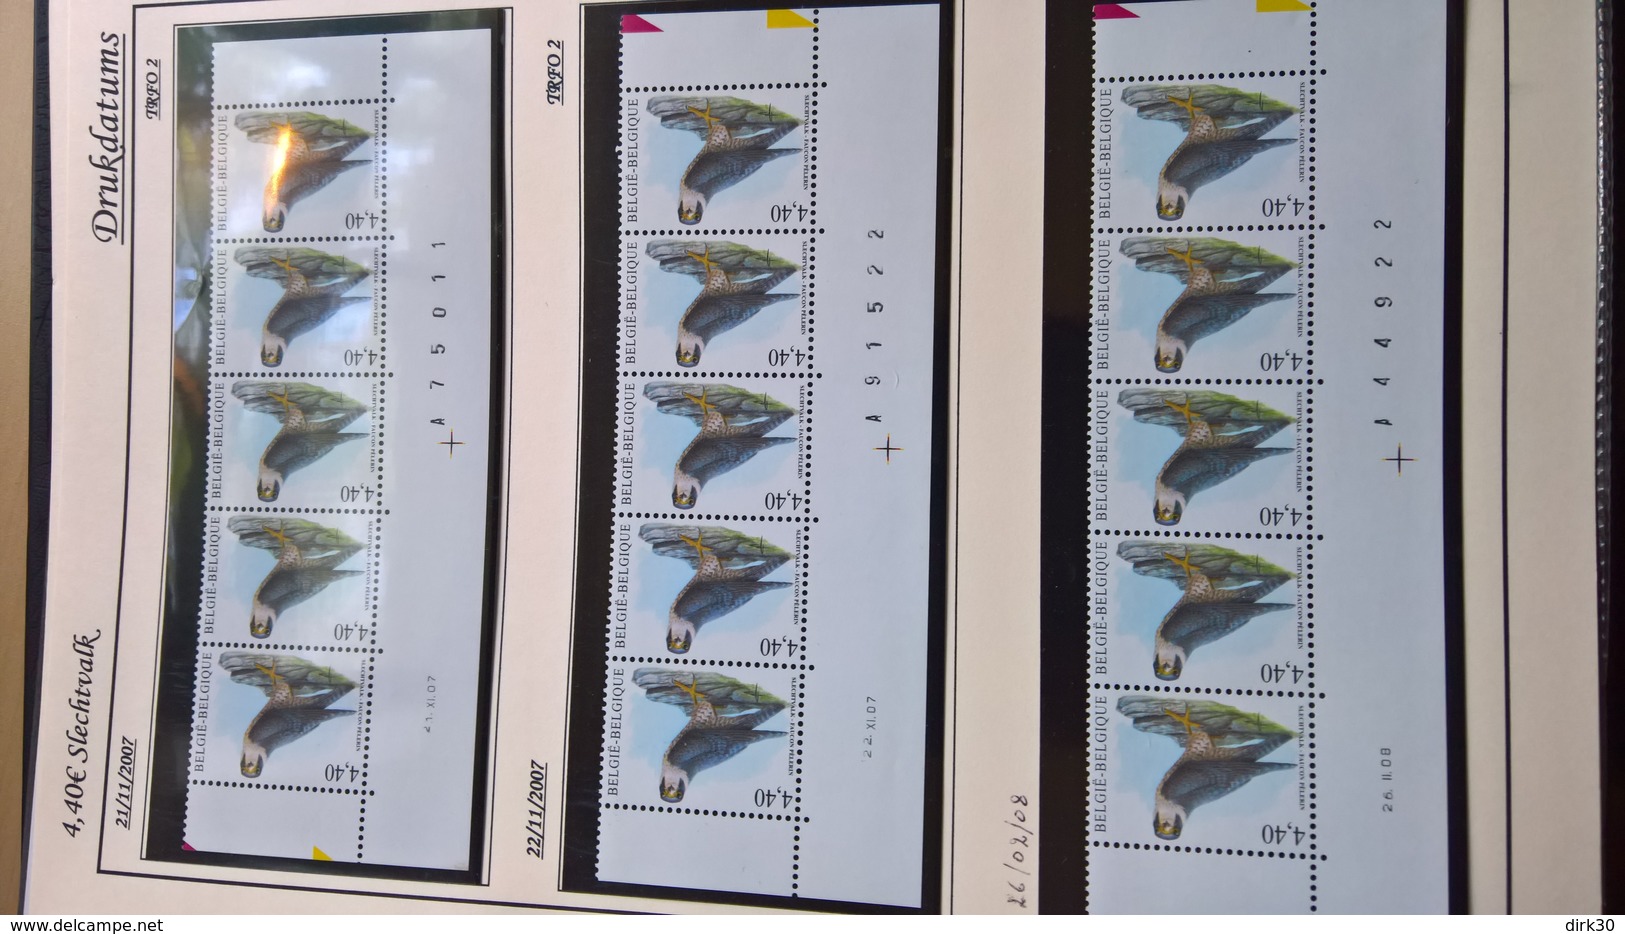 Belgie Andre Buzin Birds COLLECTION COMPLETE  DE TOUTES LES 1065 BANDES DATEES + EXTRAS !!!! RRRRRRRRR - 1985-.. Vogels (Buzin)